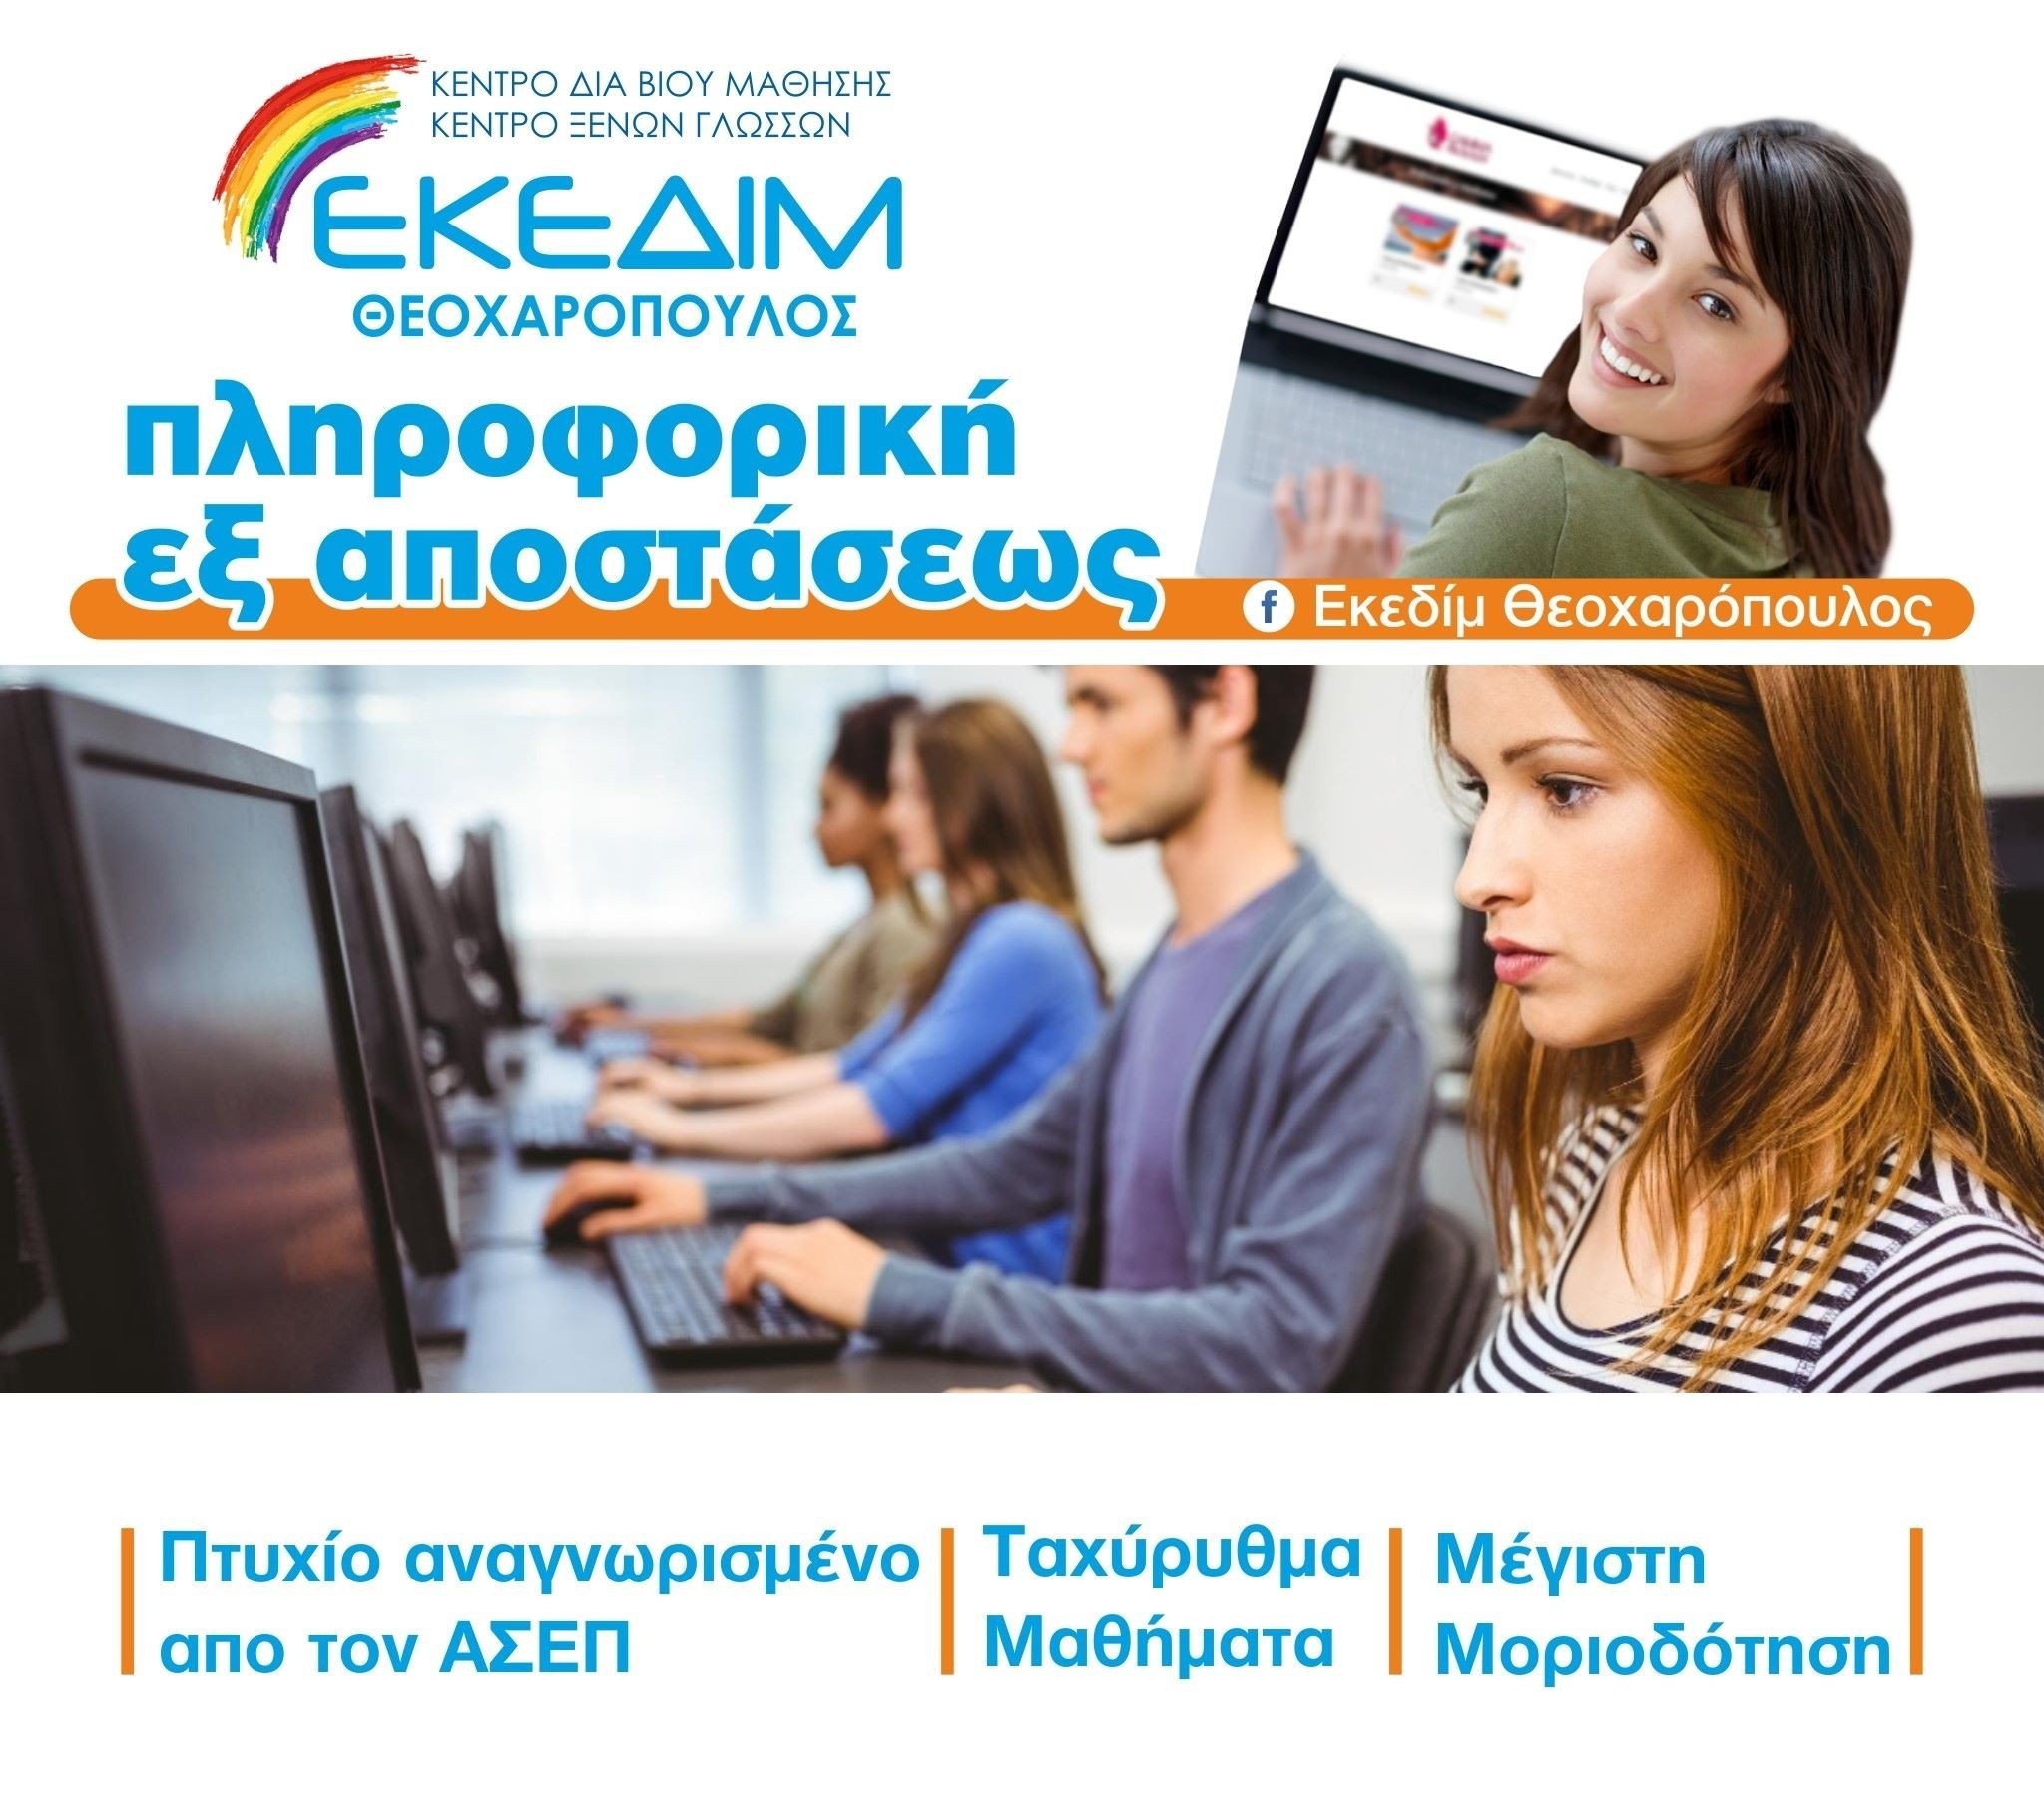 ΕΚΕΔΙΜ Θεοχαρόπουλος - Ταχύρυθμα μαθήματα πληροφορικής για απόκτηση πτυχίου αναγνωρισμένο από τον ΑΣΕΠ, μέσω του φορέα πιστοποίησης I-SKILLS